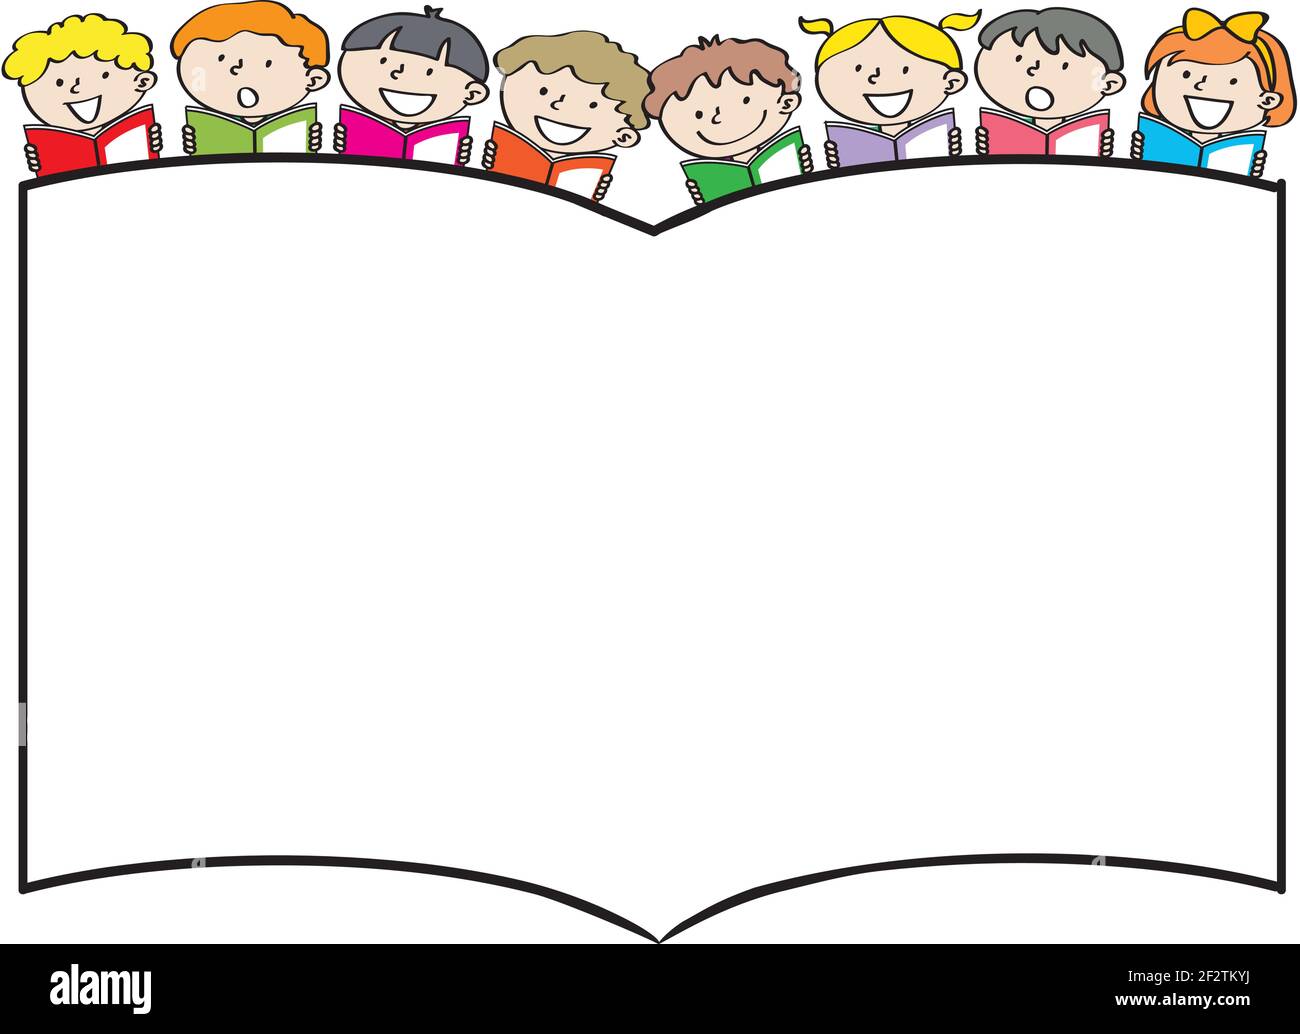 Với hình nền vector trẻ em đọc sách hoạt hình, bạn sẽ cảm thấy hào hứng và thú vị hơn khi đọc sách. Hình ảnh trẻ em đang chăm chú đọc sách sẽ đưa bạn vào một không gian đầy tưởng tượng để có thể phát triển khả năng đọc sách của mình. 